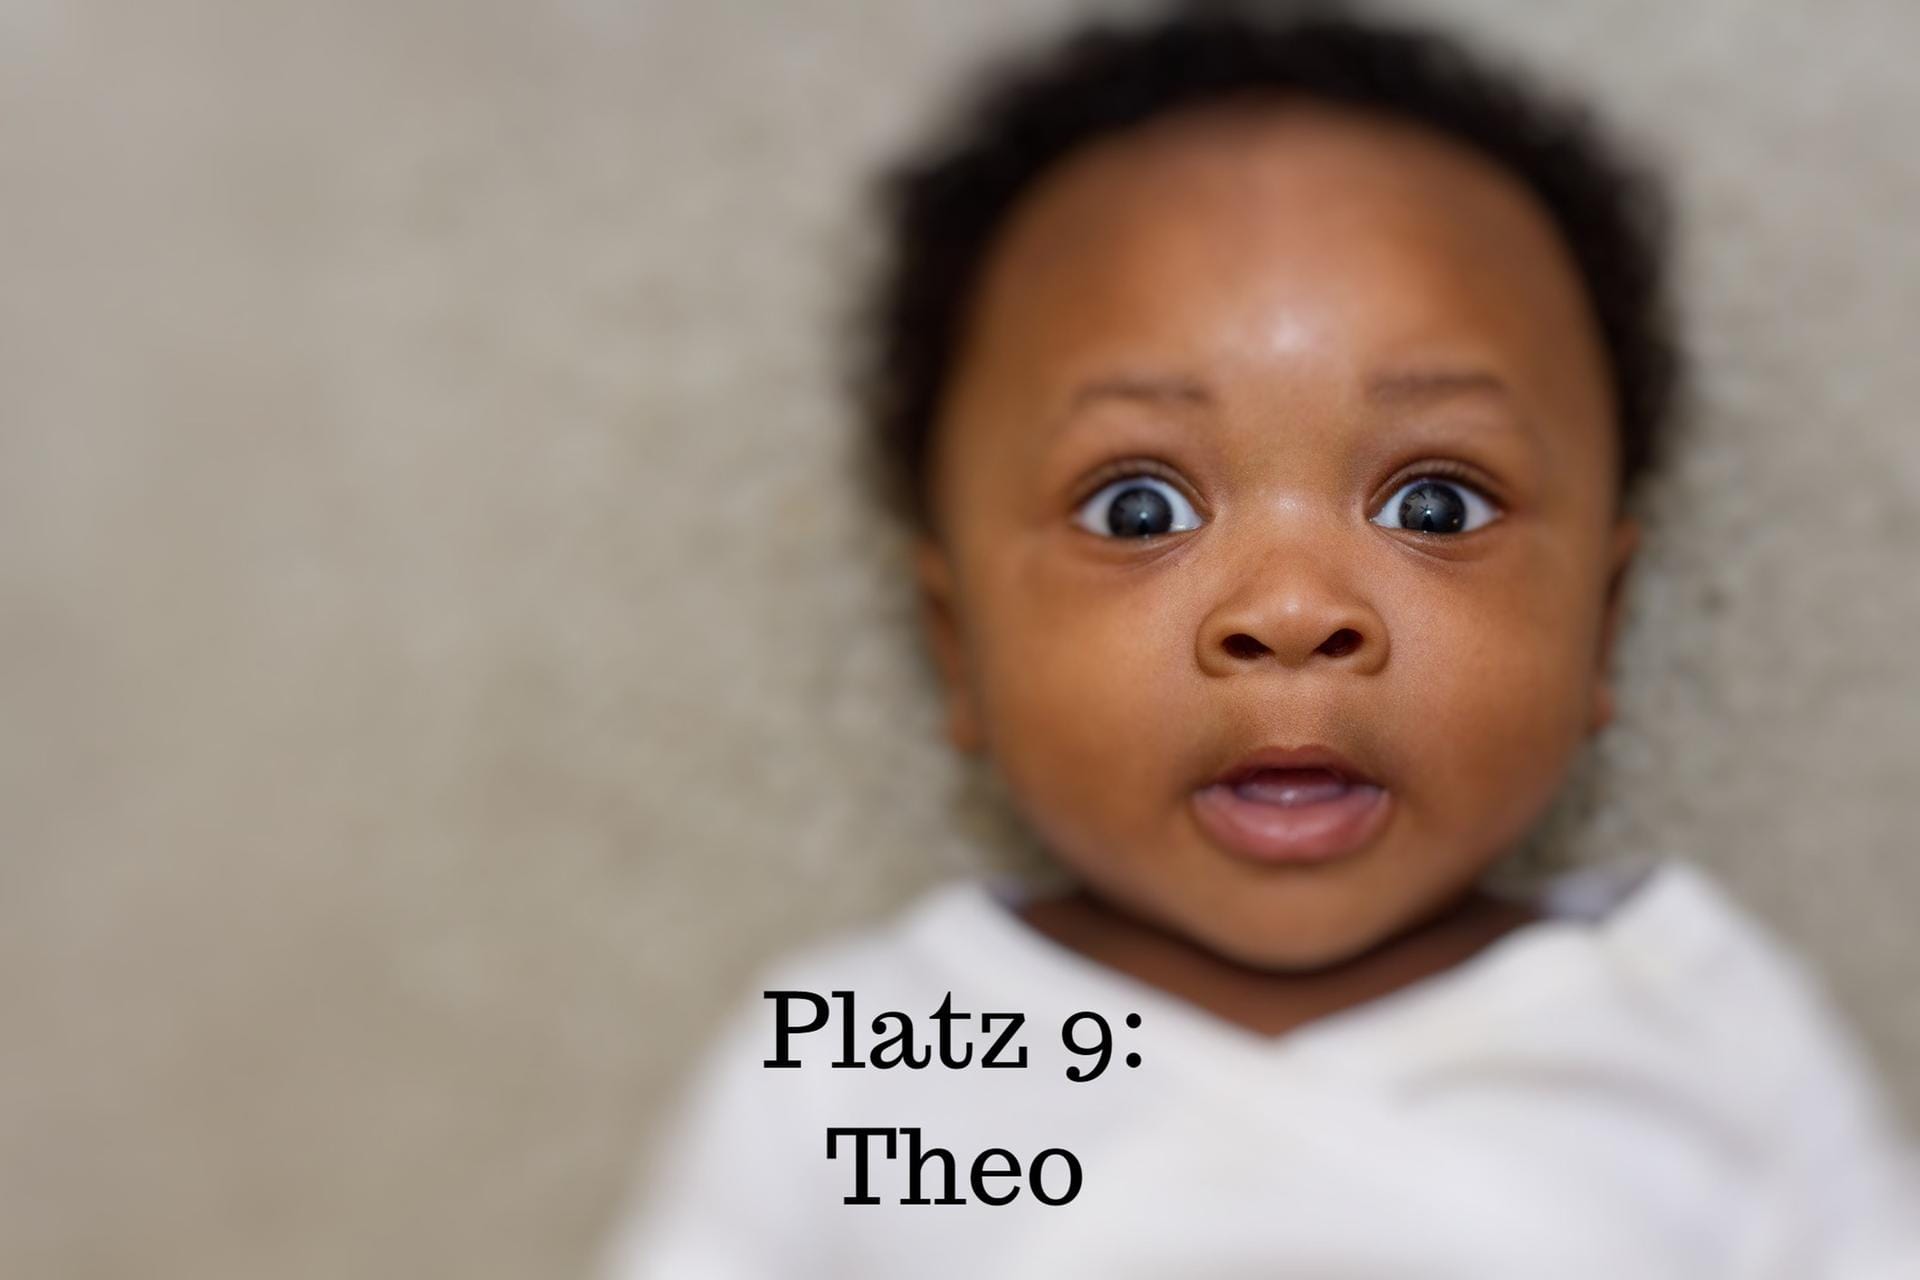 Platz 9: Theo ist die Kurzform von Theodor und leitet sich von theos (Gott) und doron (Geschenk) ab. Der Name heißt übersetzt also "das Geschenk Gottes".